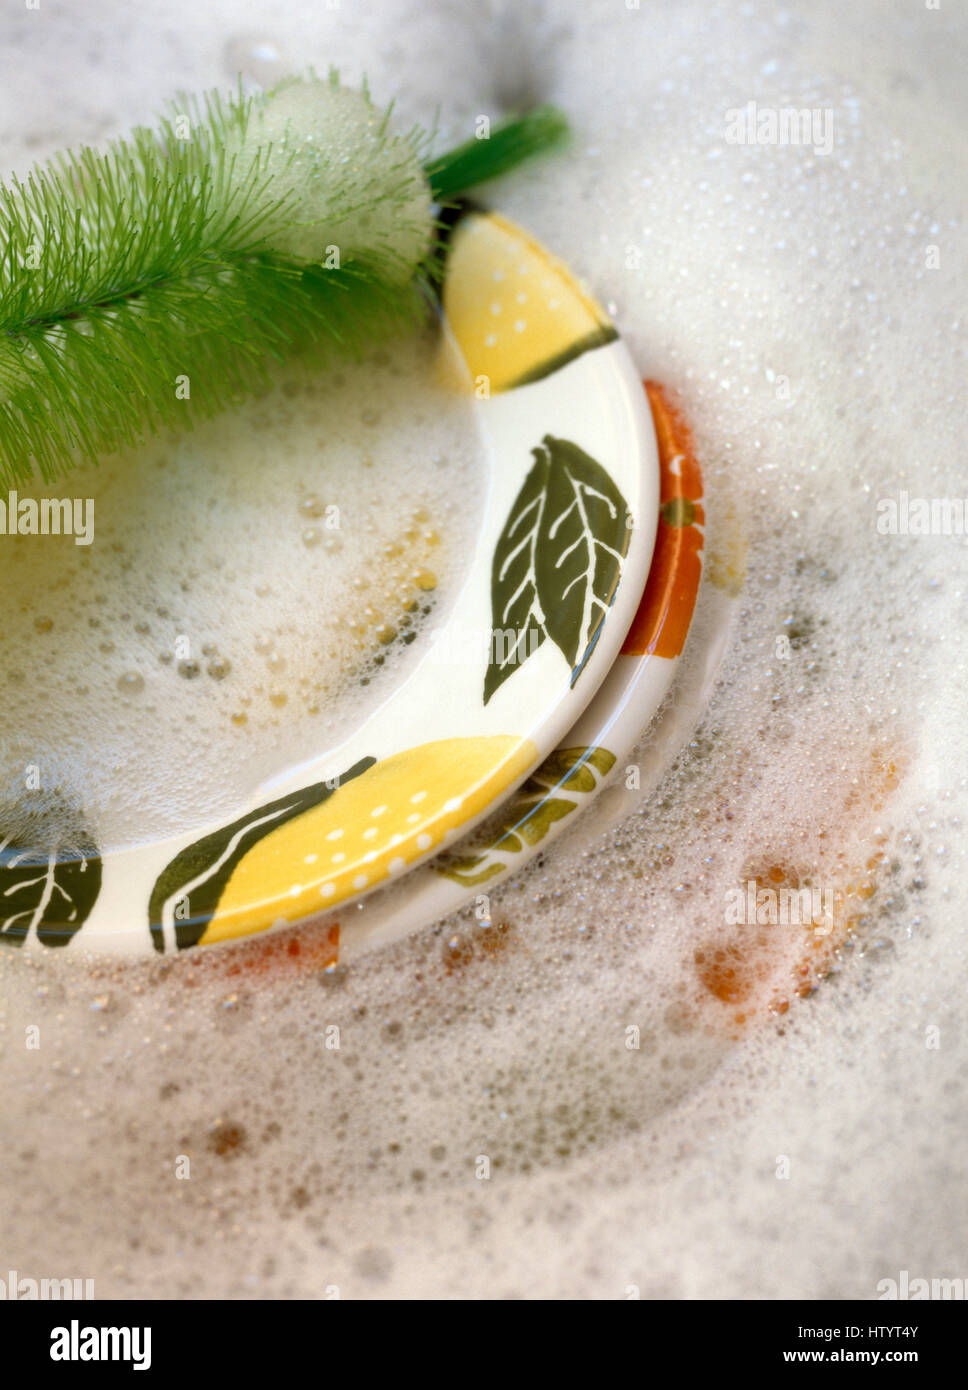 Close-up de platos pintados a mano en un tazón de lavar con jabón y un cepillo verde Foto de stock